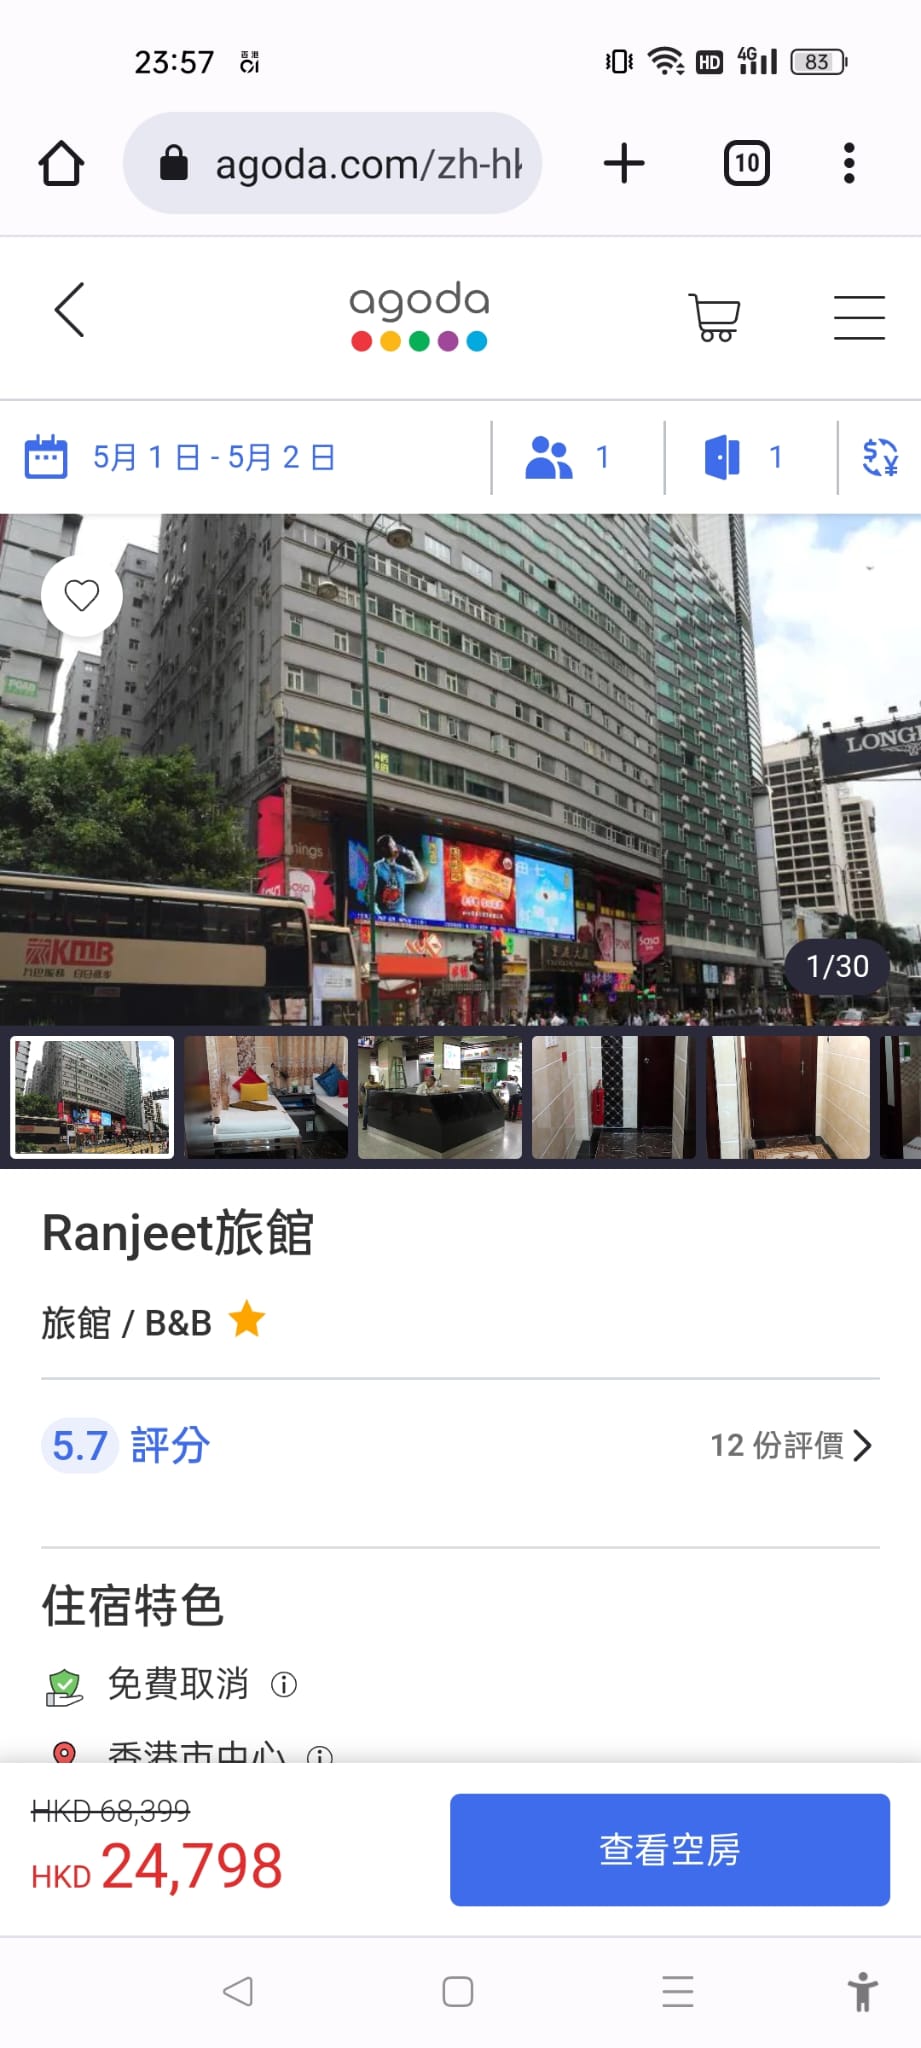 尖沙嘴重庆大厦国际旅馆五一期间出现24,798元的癫价房租。(网图)